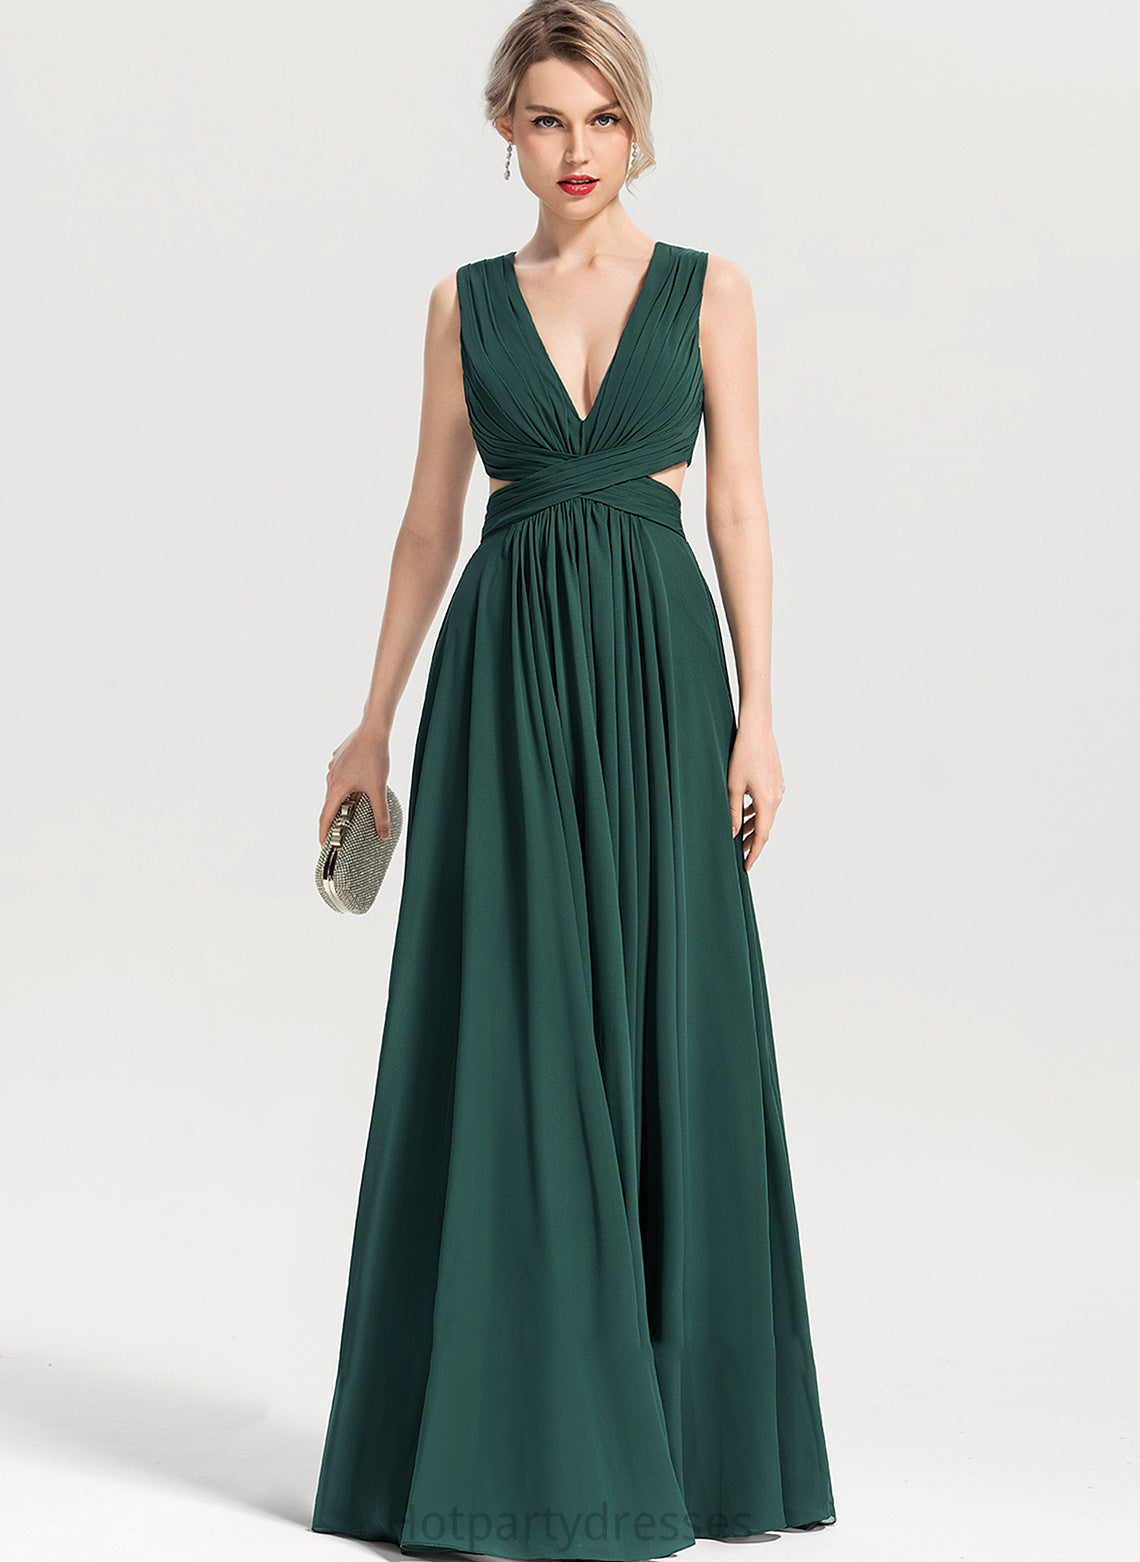 V-neck A-Line Fabric Neckline Sleeve Floor-Length Silhouette Length Joanna Floor Length Natural Waist Sleeveless Bridesmaid Dresses